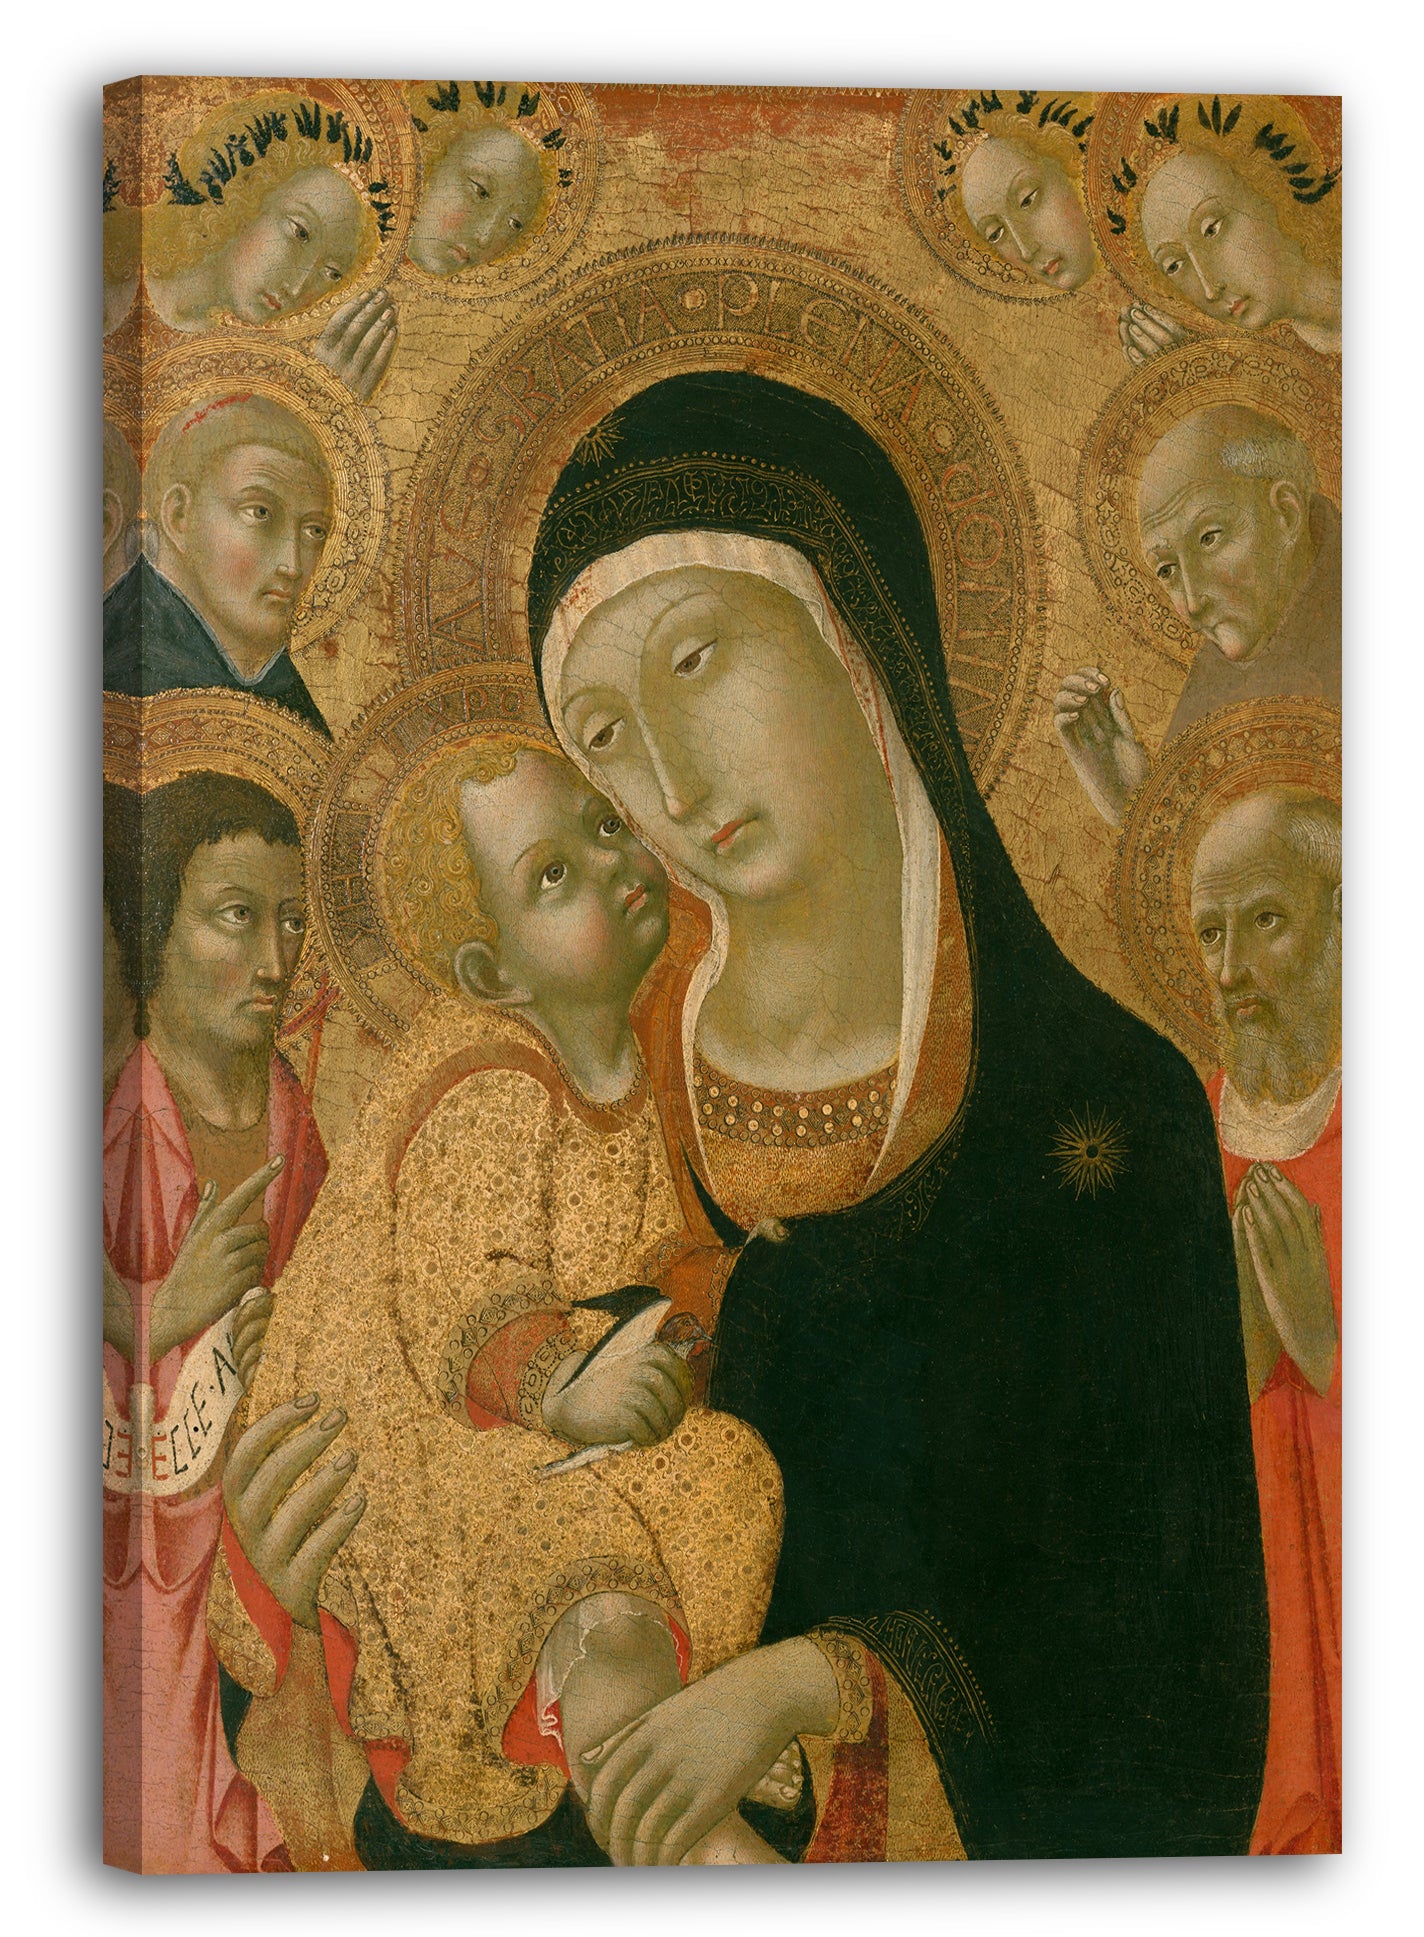 Leinwandbild Sano di Pietro - Madonna und Kind mit Heiligen Johannes der Täufer, Jerome, Peter der Märtyrer und Bernardino und vier Engel